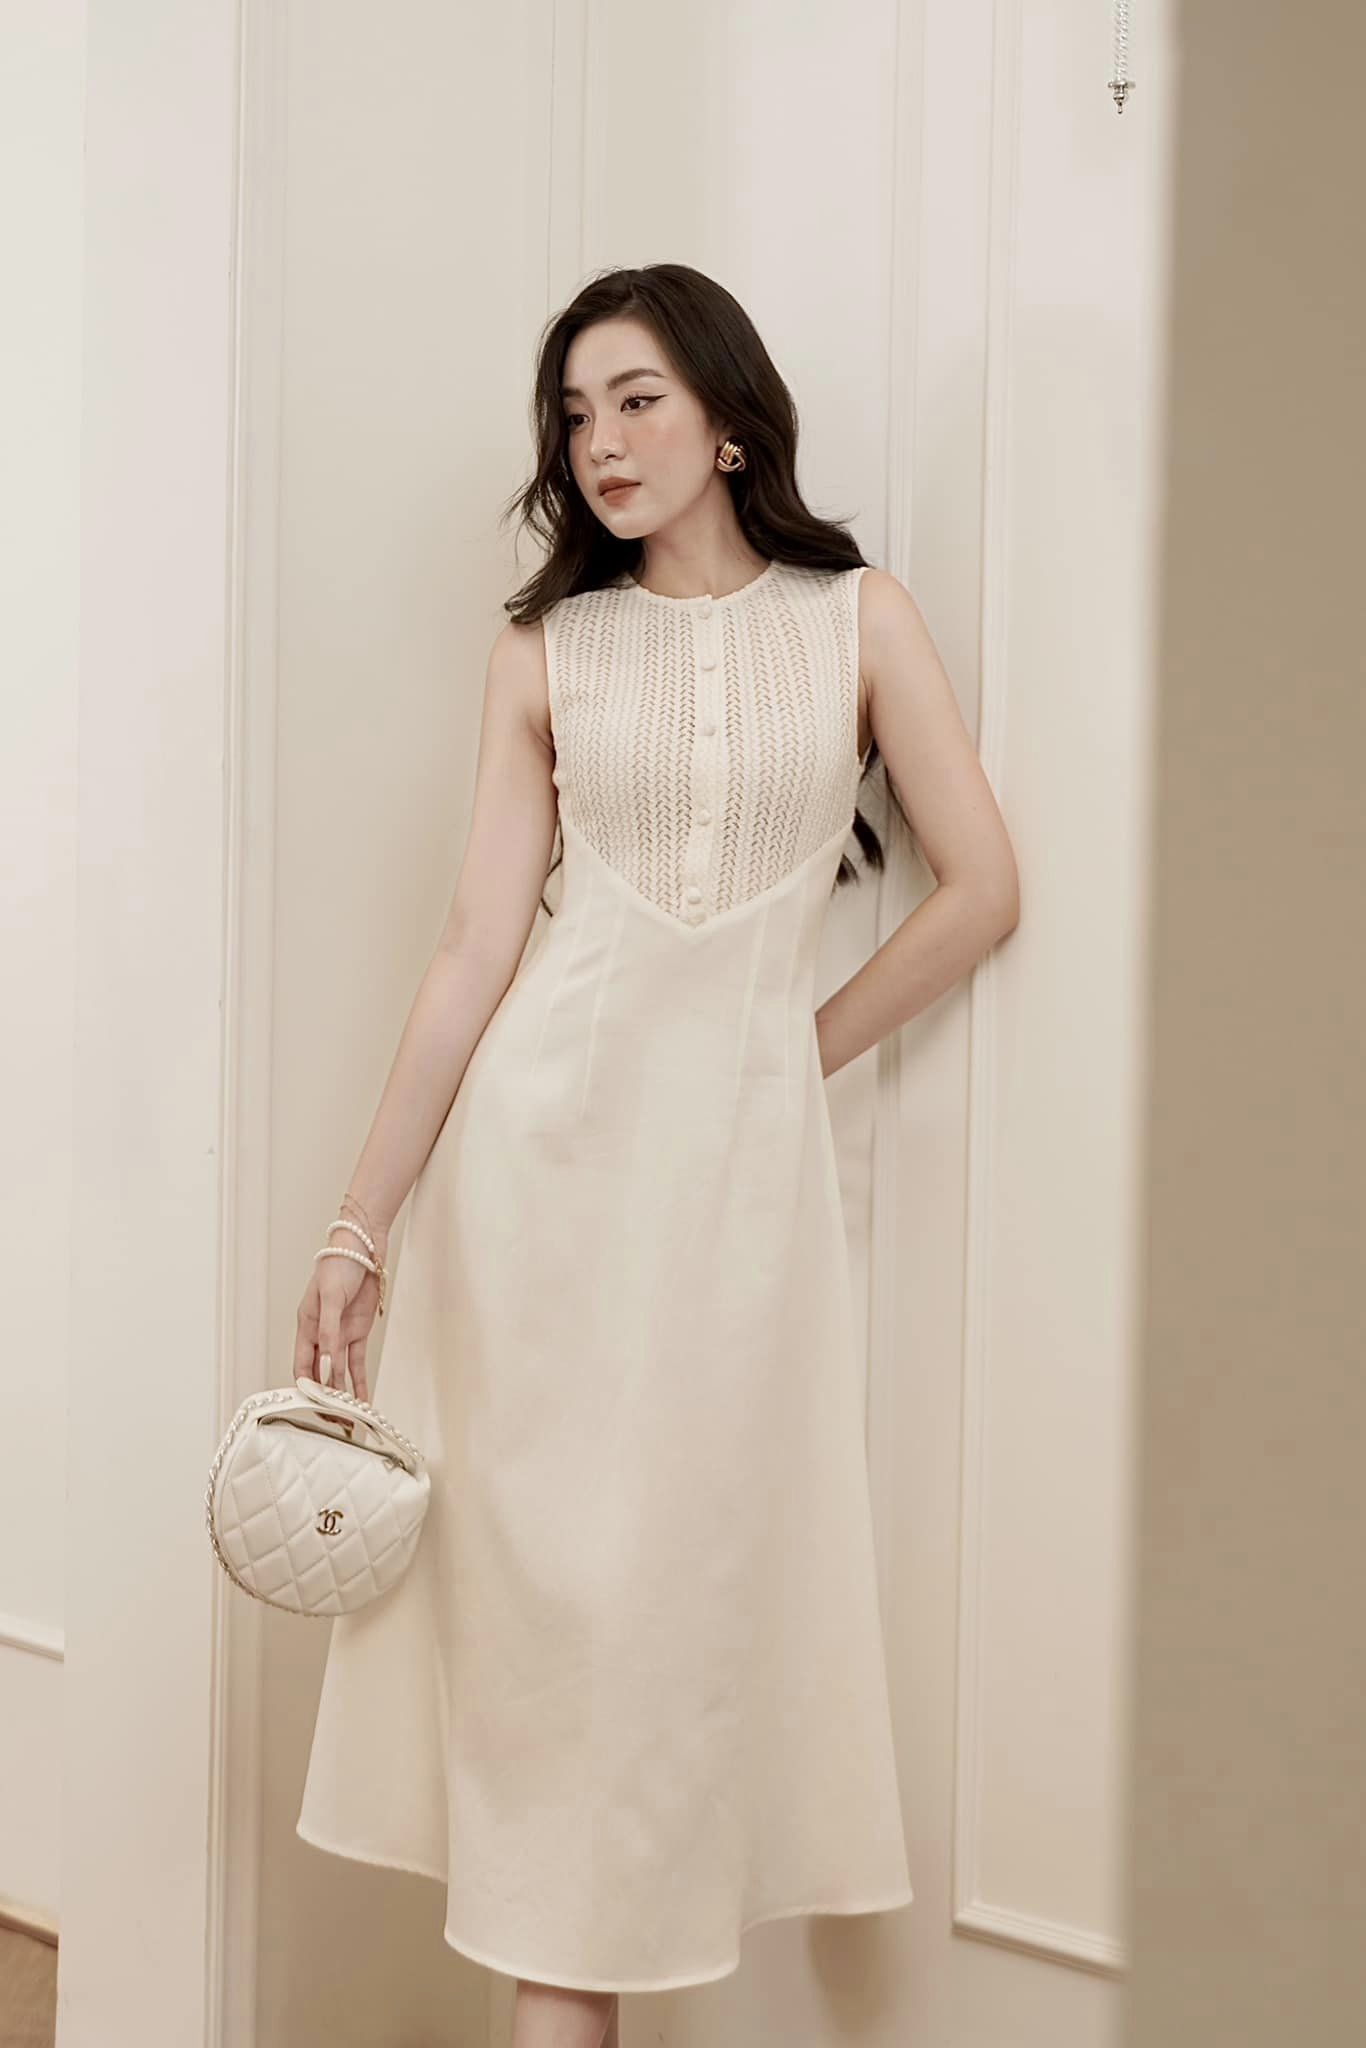 LEK438 - Váy len nữ thời trang thu đông, phong cách Hàn Quốc - Đỏ